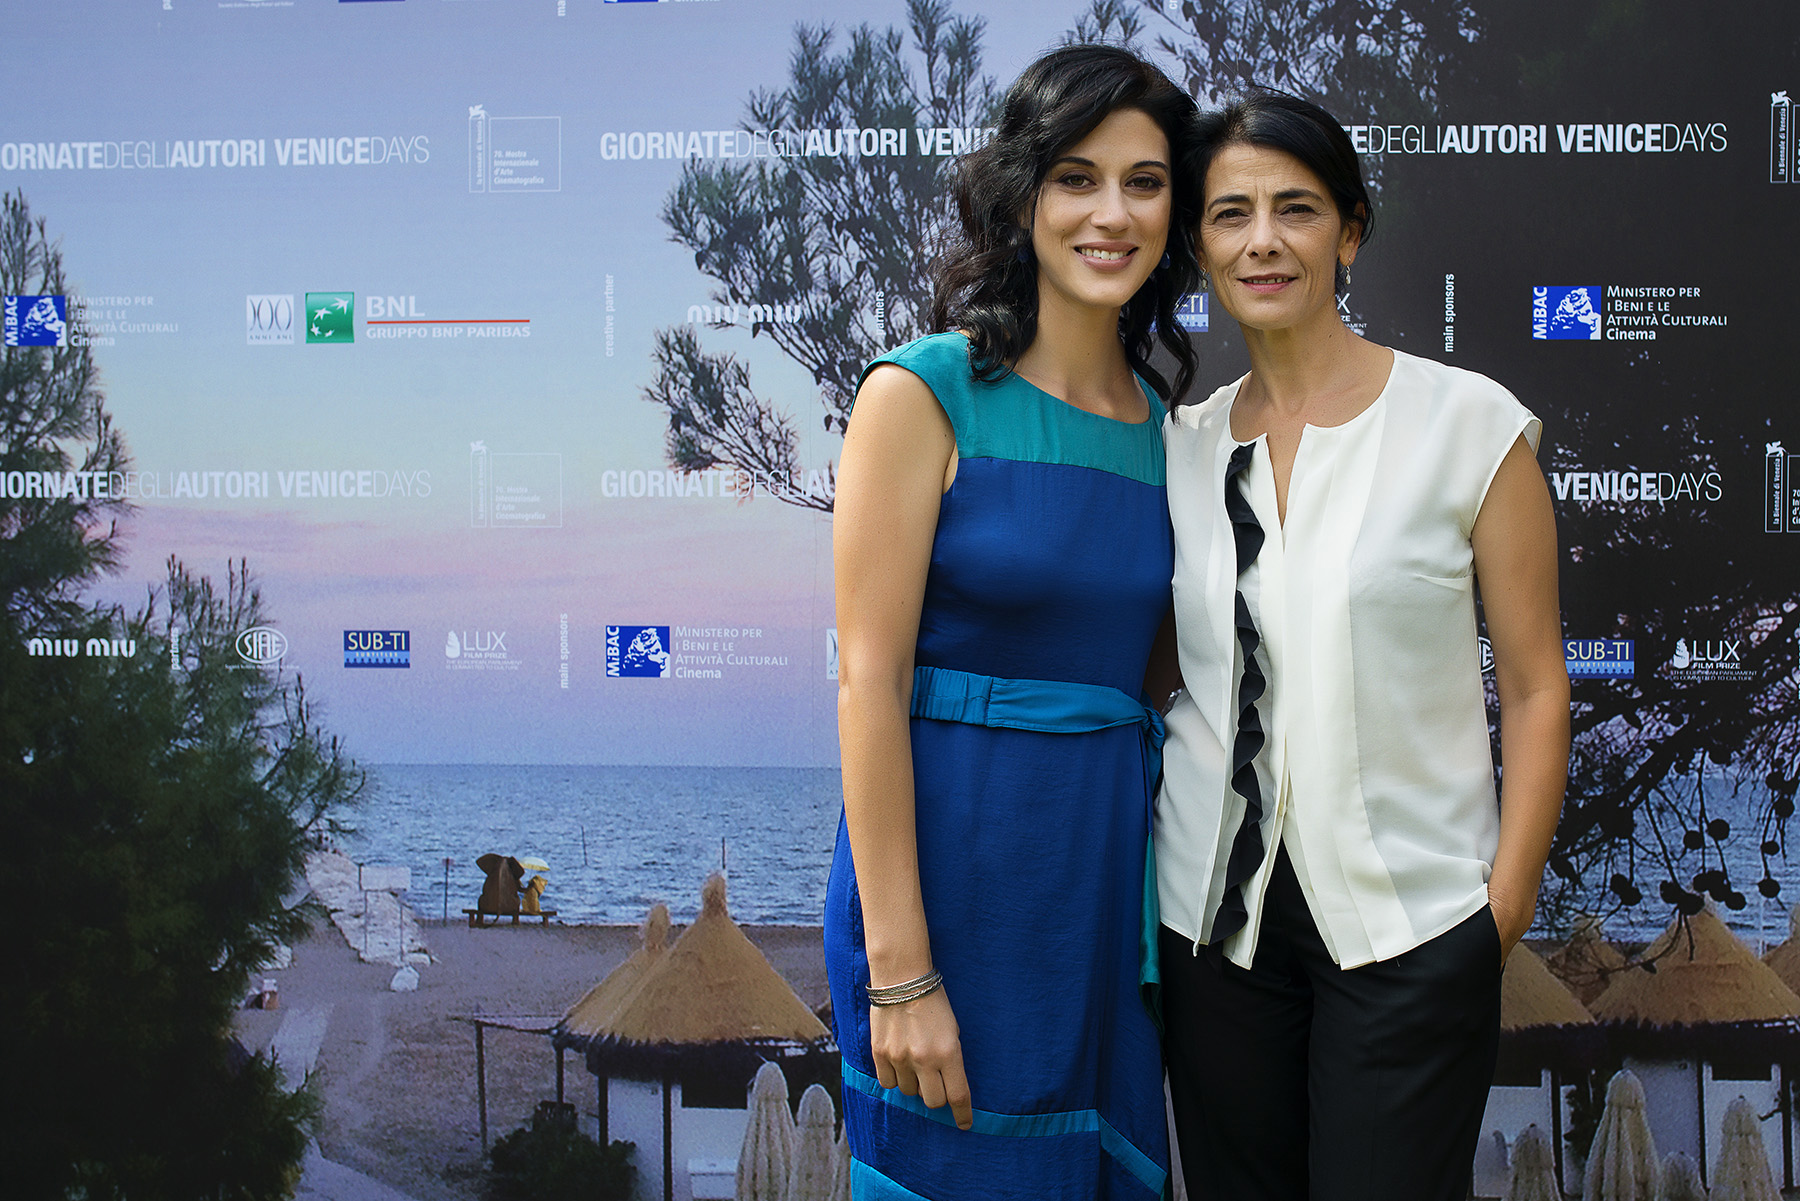 Cherien Dabis and Hiam Abbass at the 2013 Venice Film Festival.